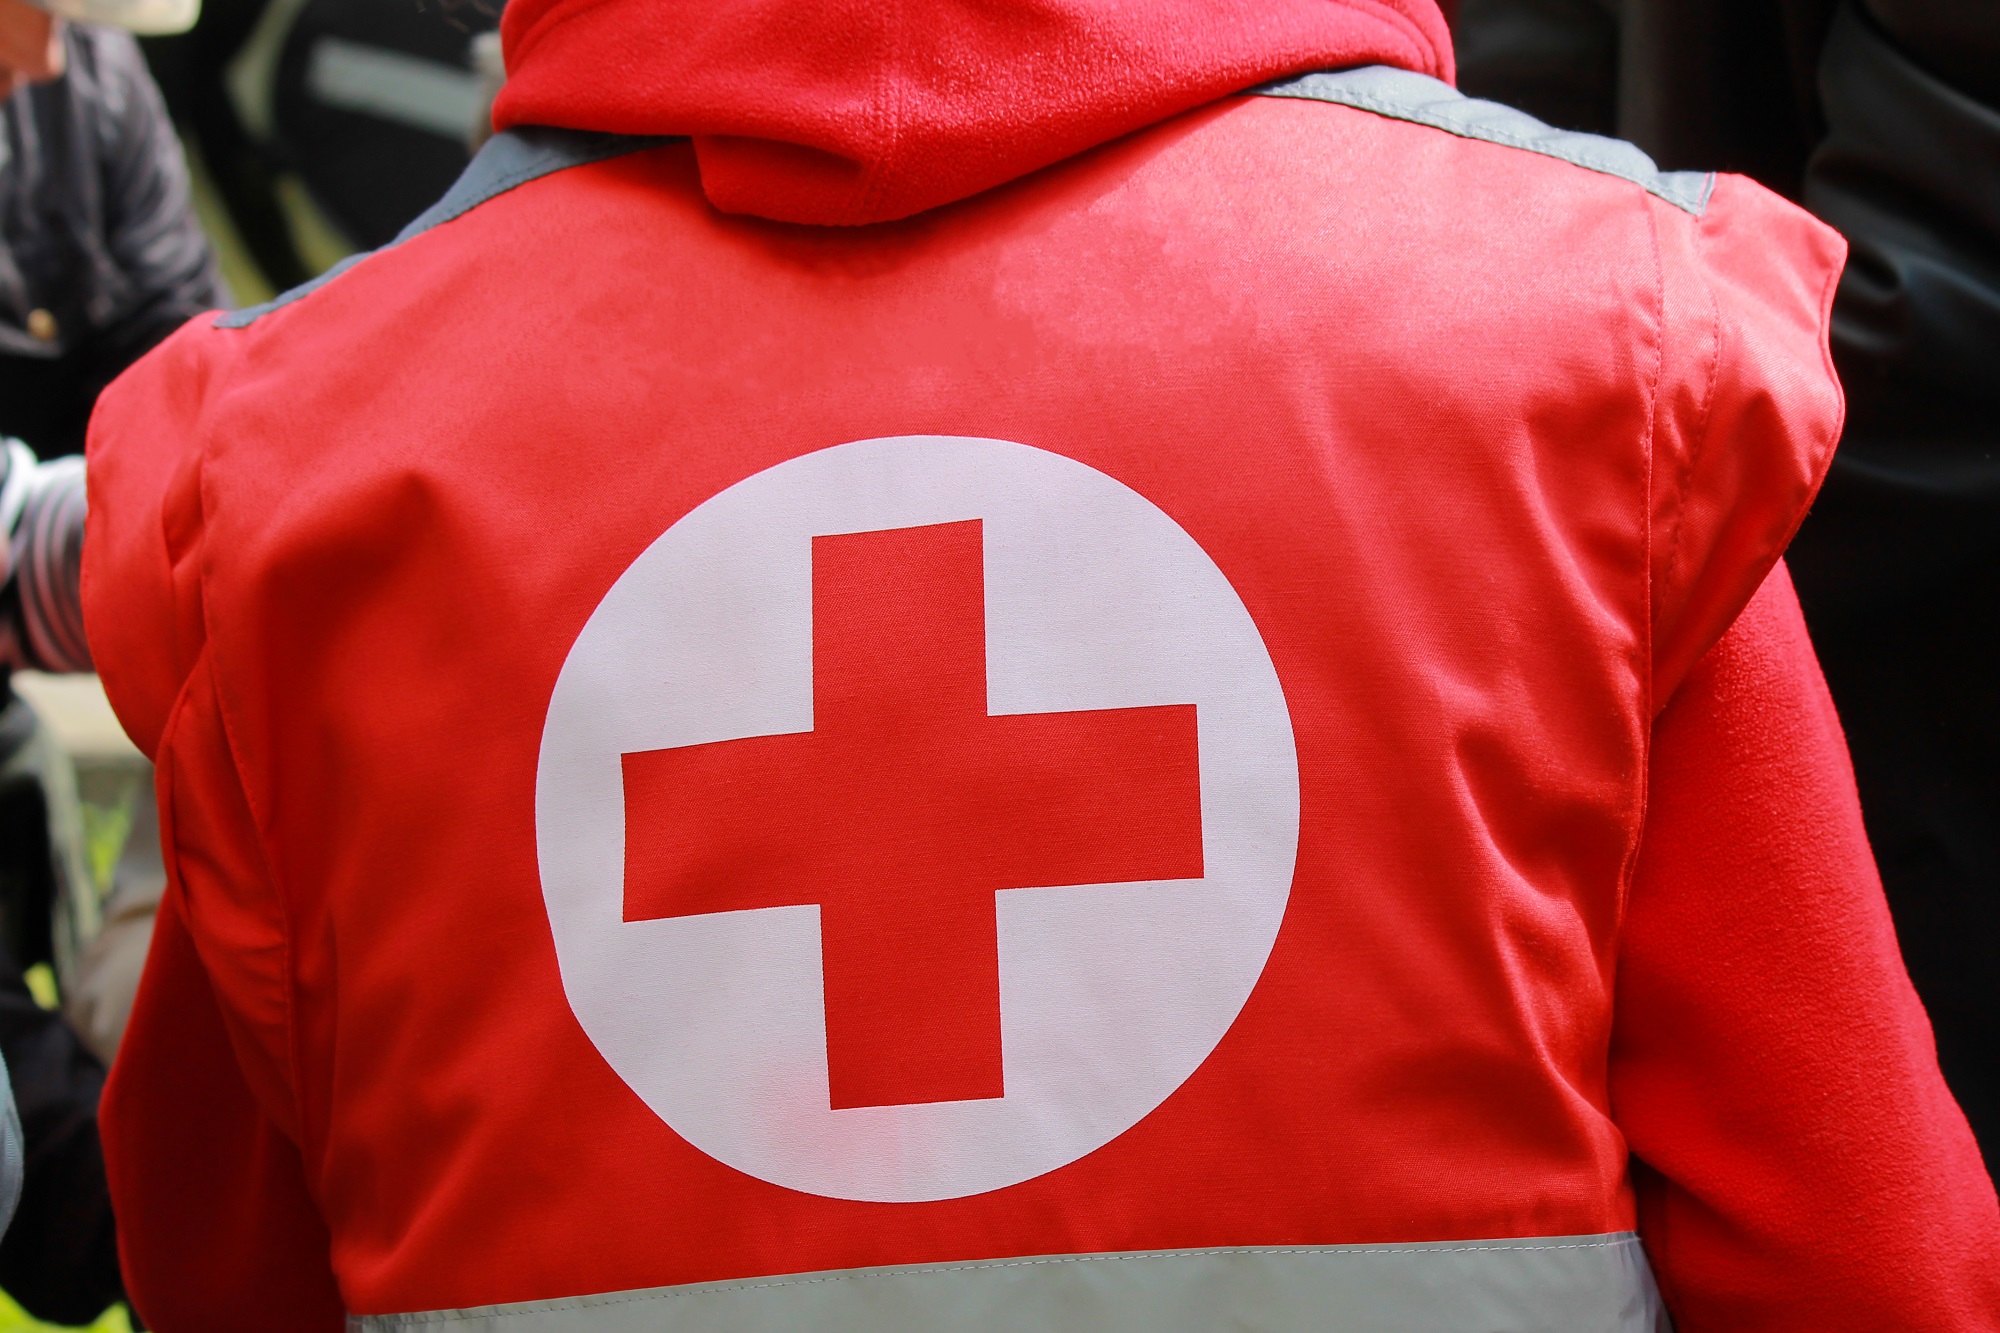 اللجنة الدولية للصليب الأحمر قالت إنها تبرعت بنقالات وأسرّة مستشفيات ومعدات طبية لعلاج 150 مصابًا بجروح خطيرة في غزة. (shutterstock)